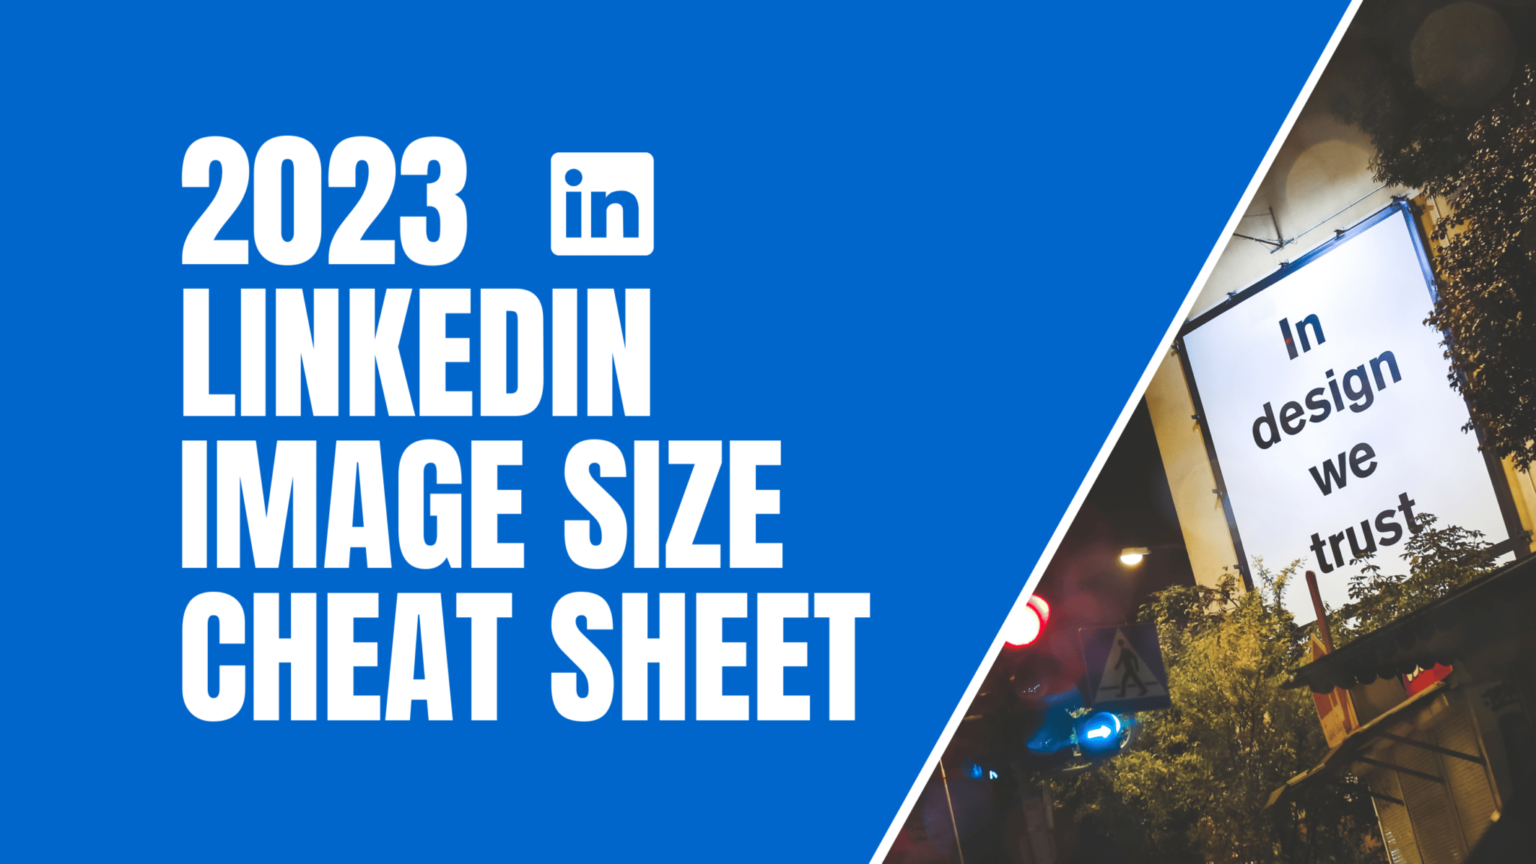 LinkedIn Image Size Cheat Sheet: Bạn đã bao giờ muốn tạo hình ảnh hoàn hảo cho trang cá nhân LinkedIn của mình nhưng lại không biết kích thước ảnh là bao nhiêu? Đừng lo, chúng tôi đã có một tài liệu hướng dẫn về kích thước ảnh trên LinkedIn để giúp bạn tạo ra những hình ảnh đẹp và chuyên nghiệp nhất. 